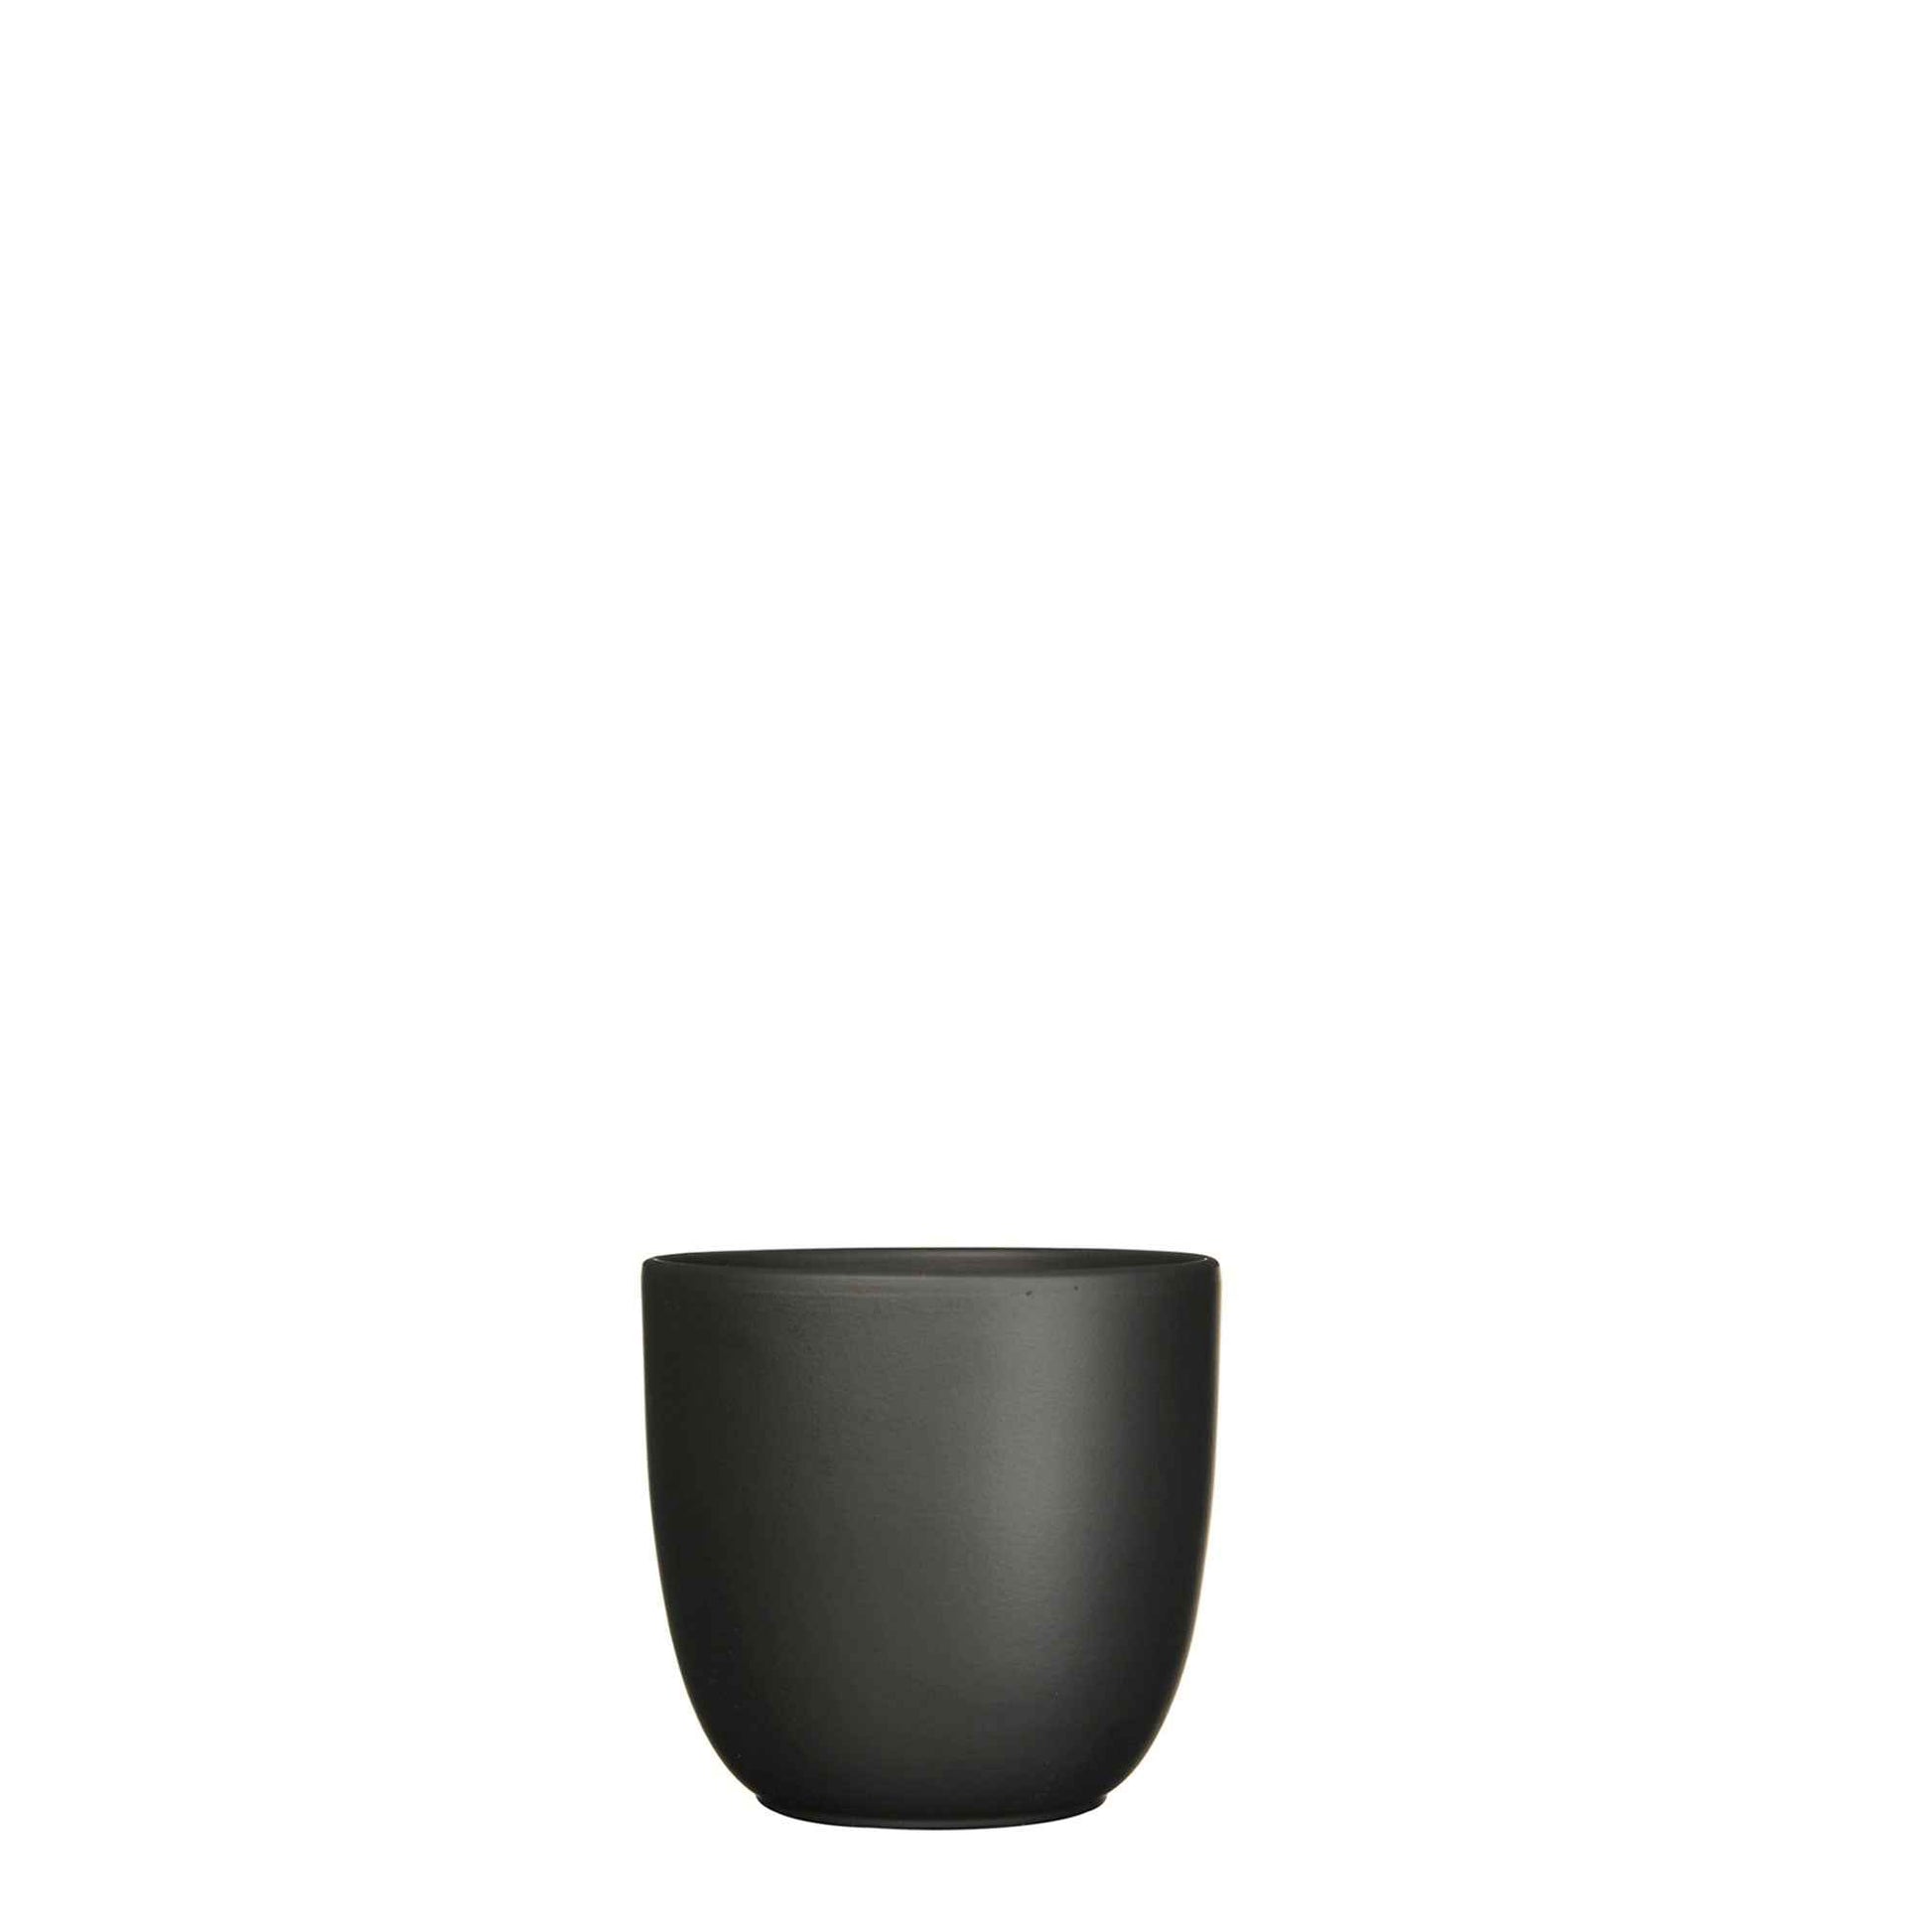 Mica pot de fleurs Tusca rond noir avec table à plantes noire - Marques